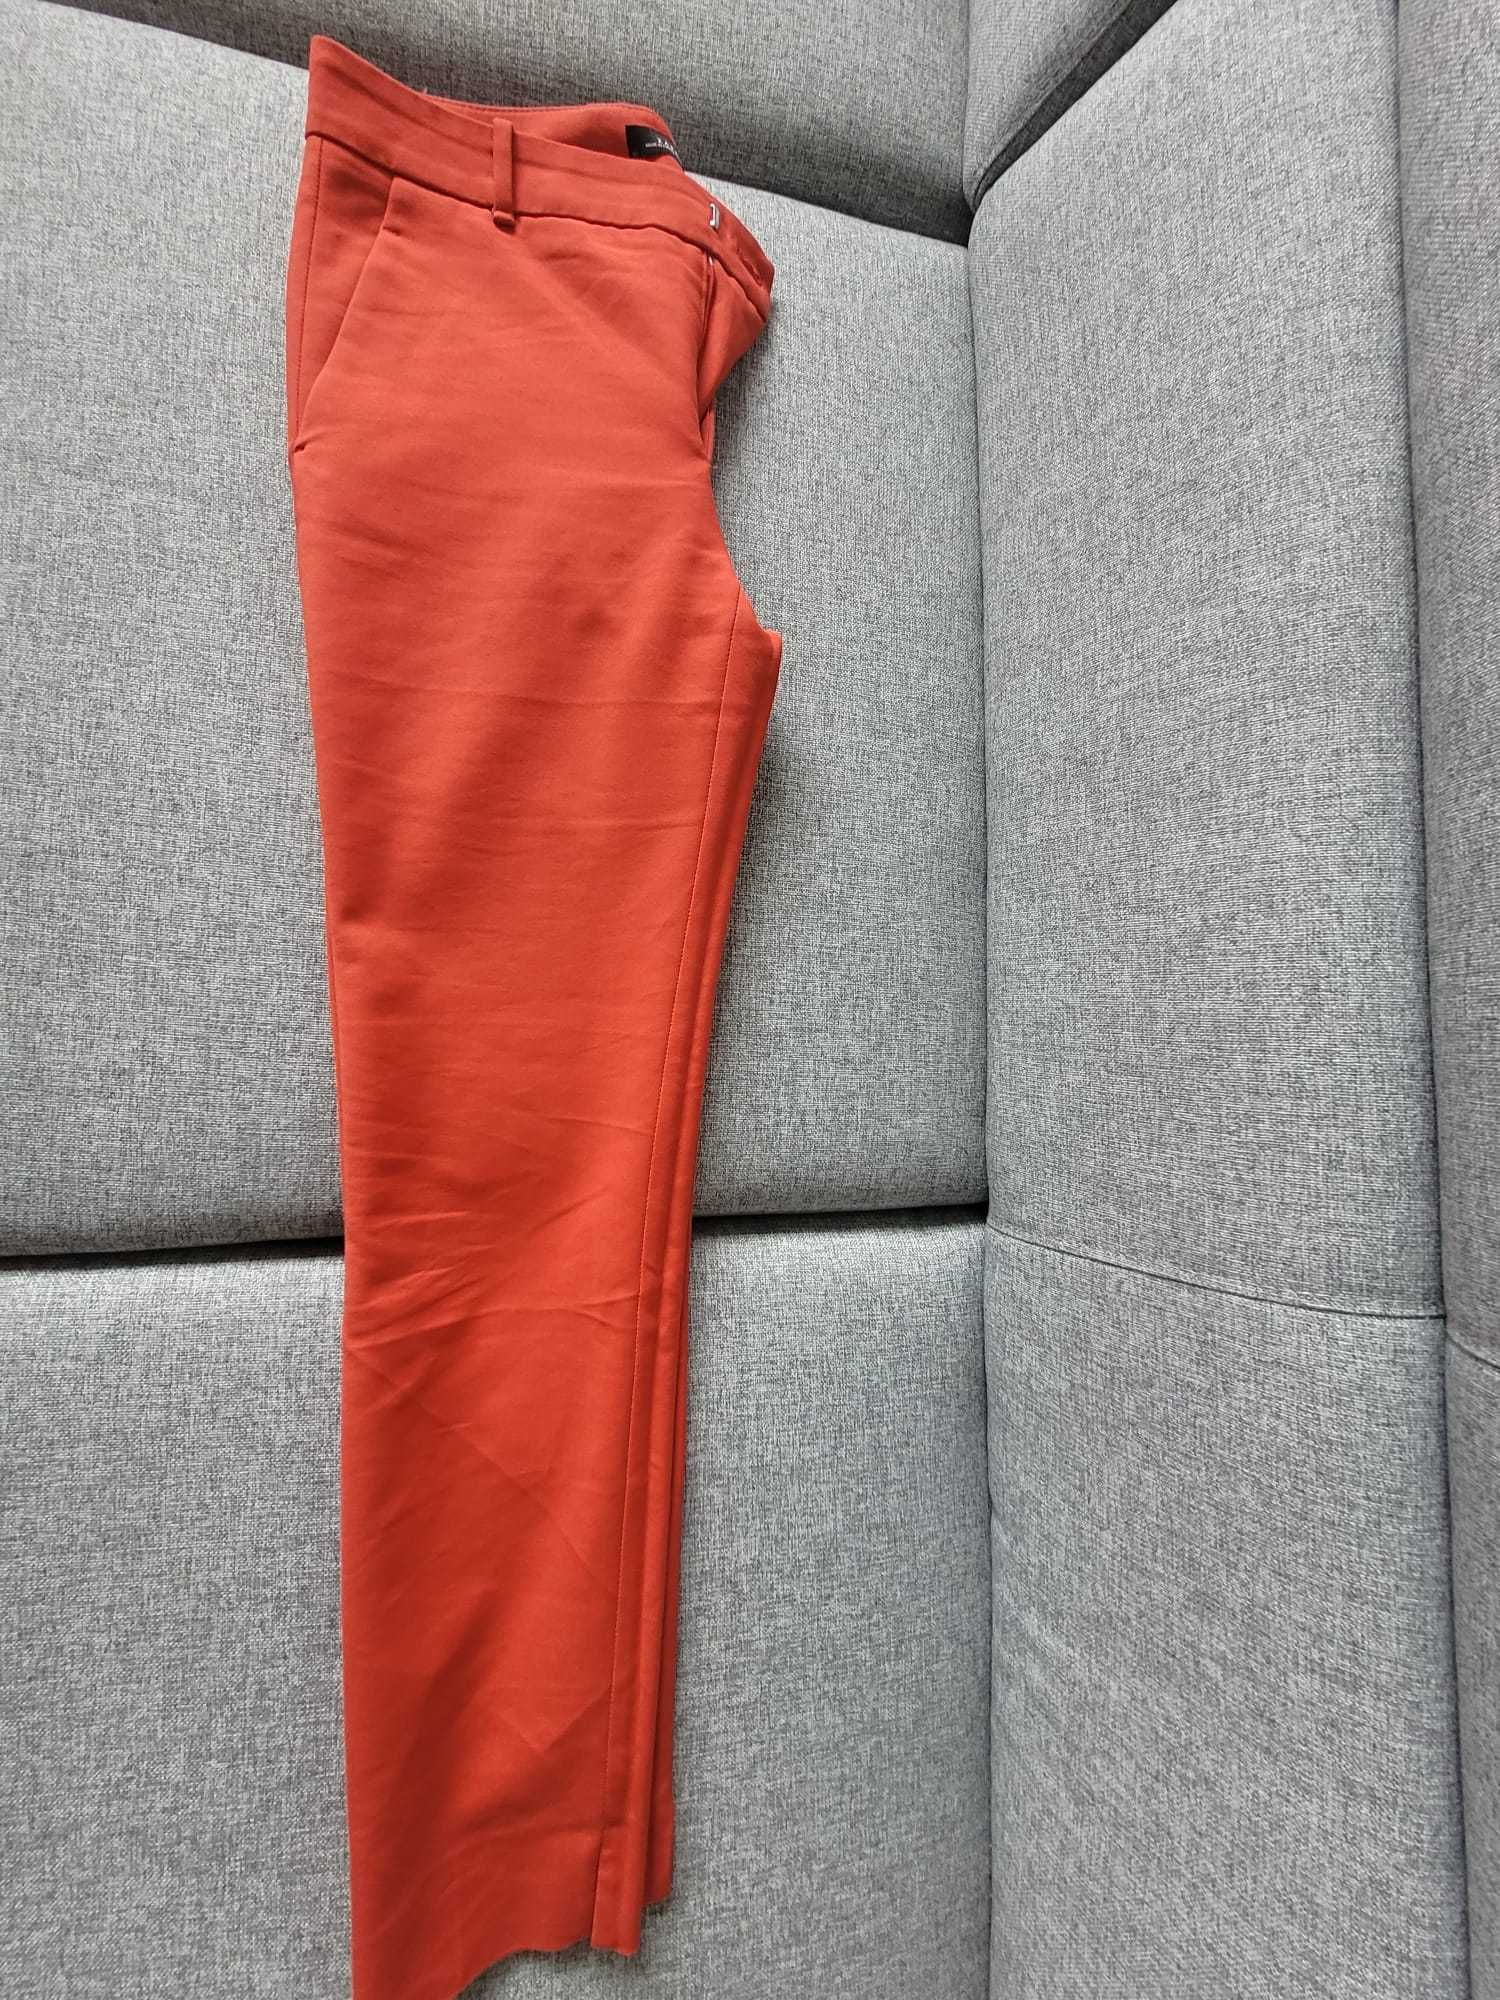 Spodnie damskie czerwone Zara rozmiar 34